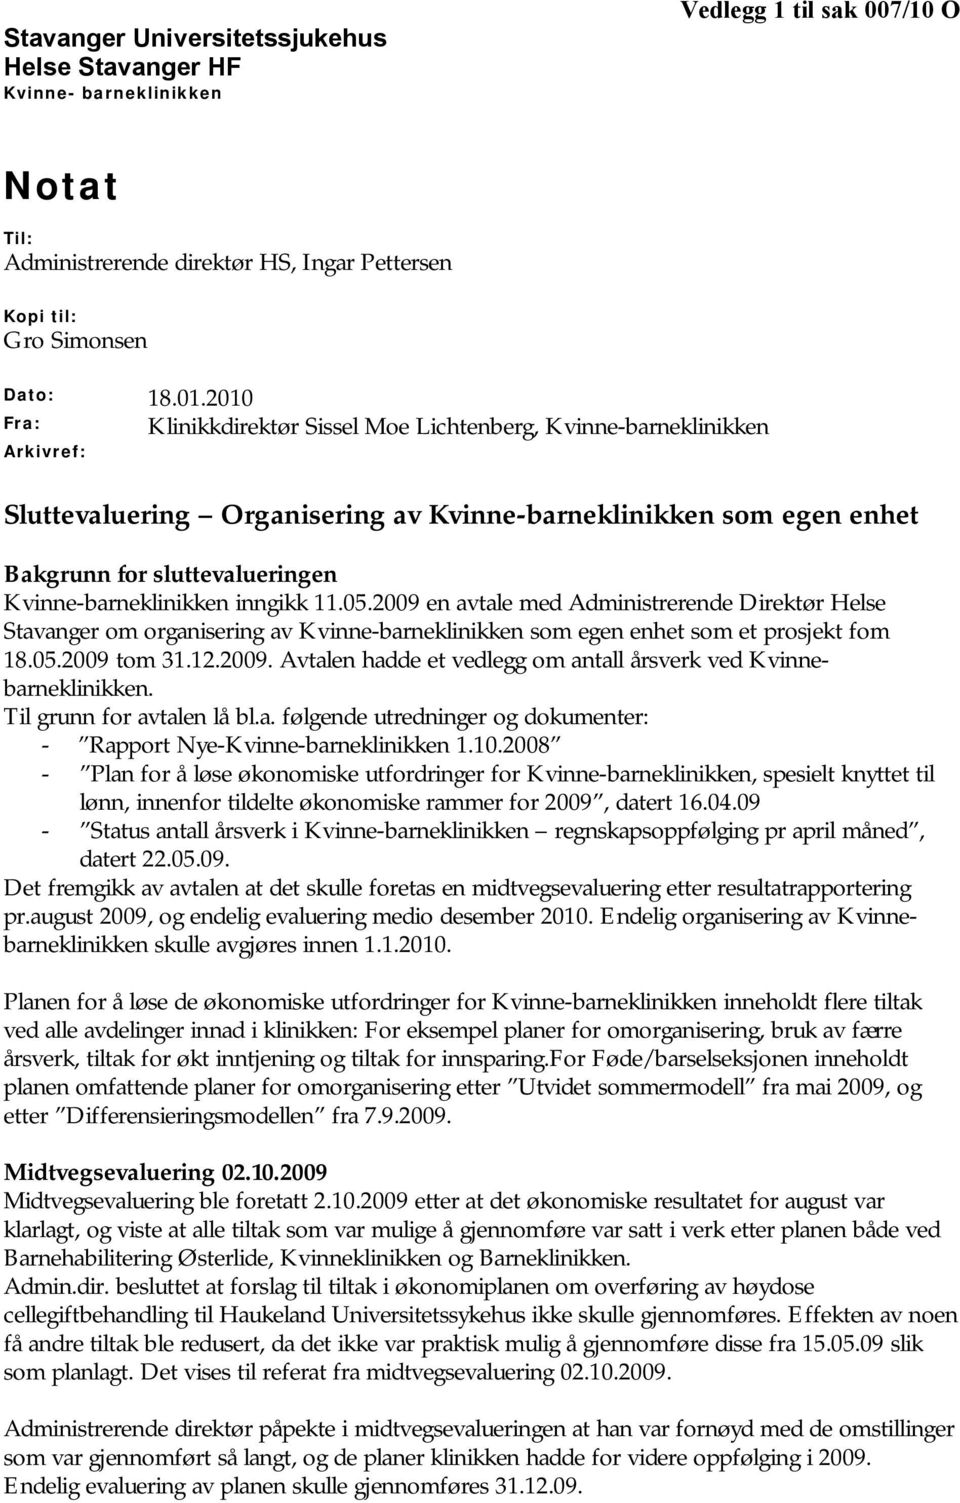 Kvinne-barneklinikken inngikk 11.05.2009 en avtale med Administrerende Direktør Helse Stavanger om organisering av Kvinne-barneklinikken som egen enhet som et prosjekt fom 18.05.2009 tom 31.12.2009. Avtalen hadde et vedlegg om antall årsverk ved Kvinnebarneklinikken.